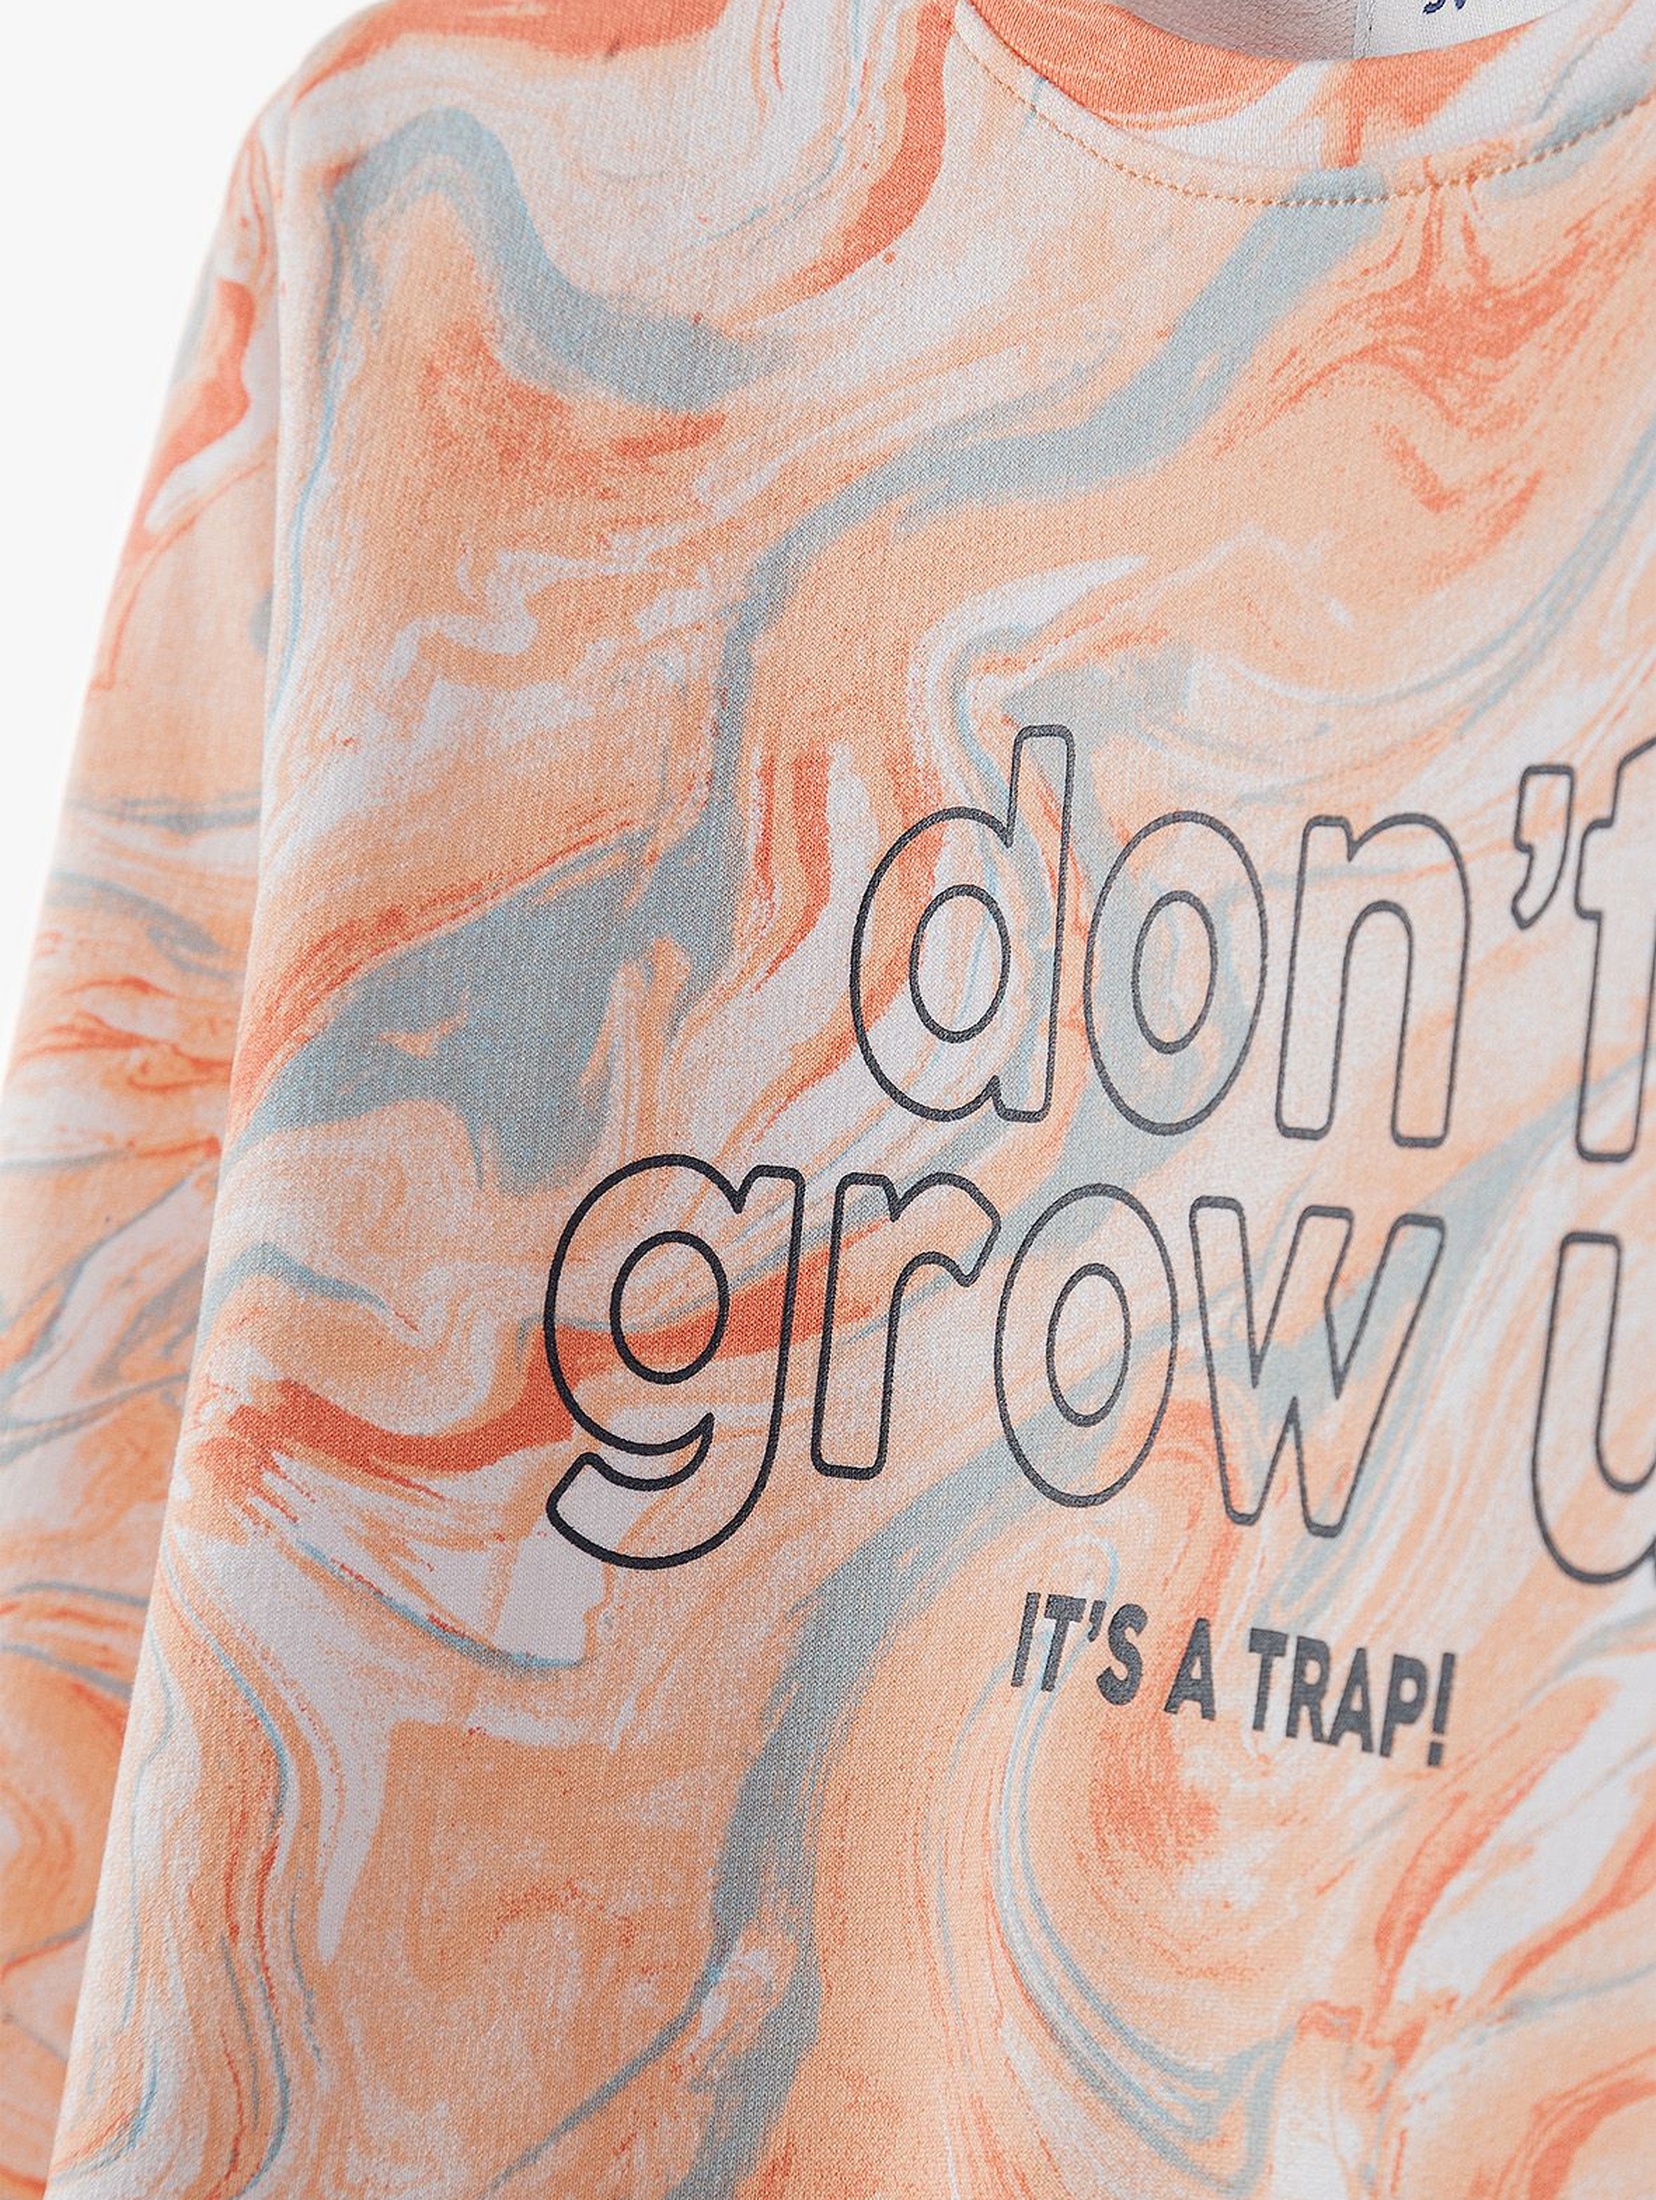 Bluza dresowa dziewczęca z napisem Don't grow up